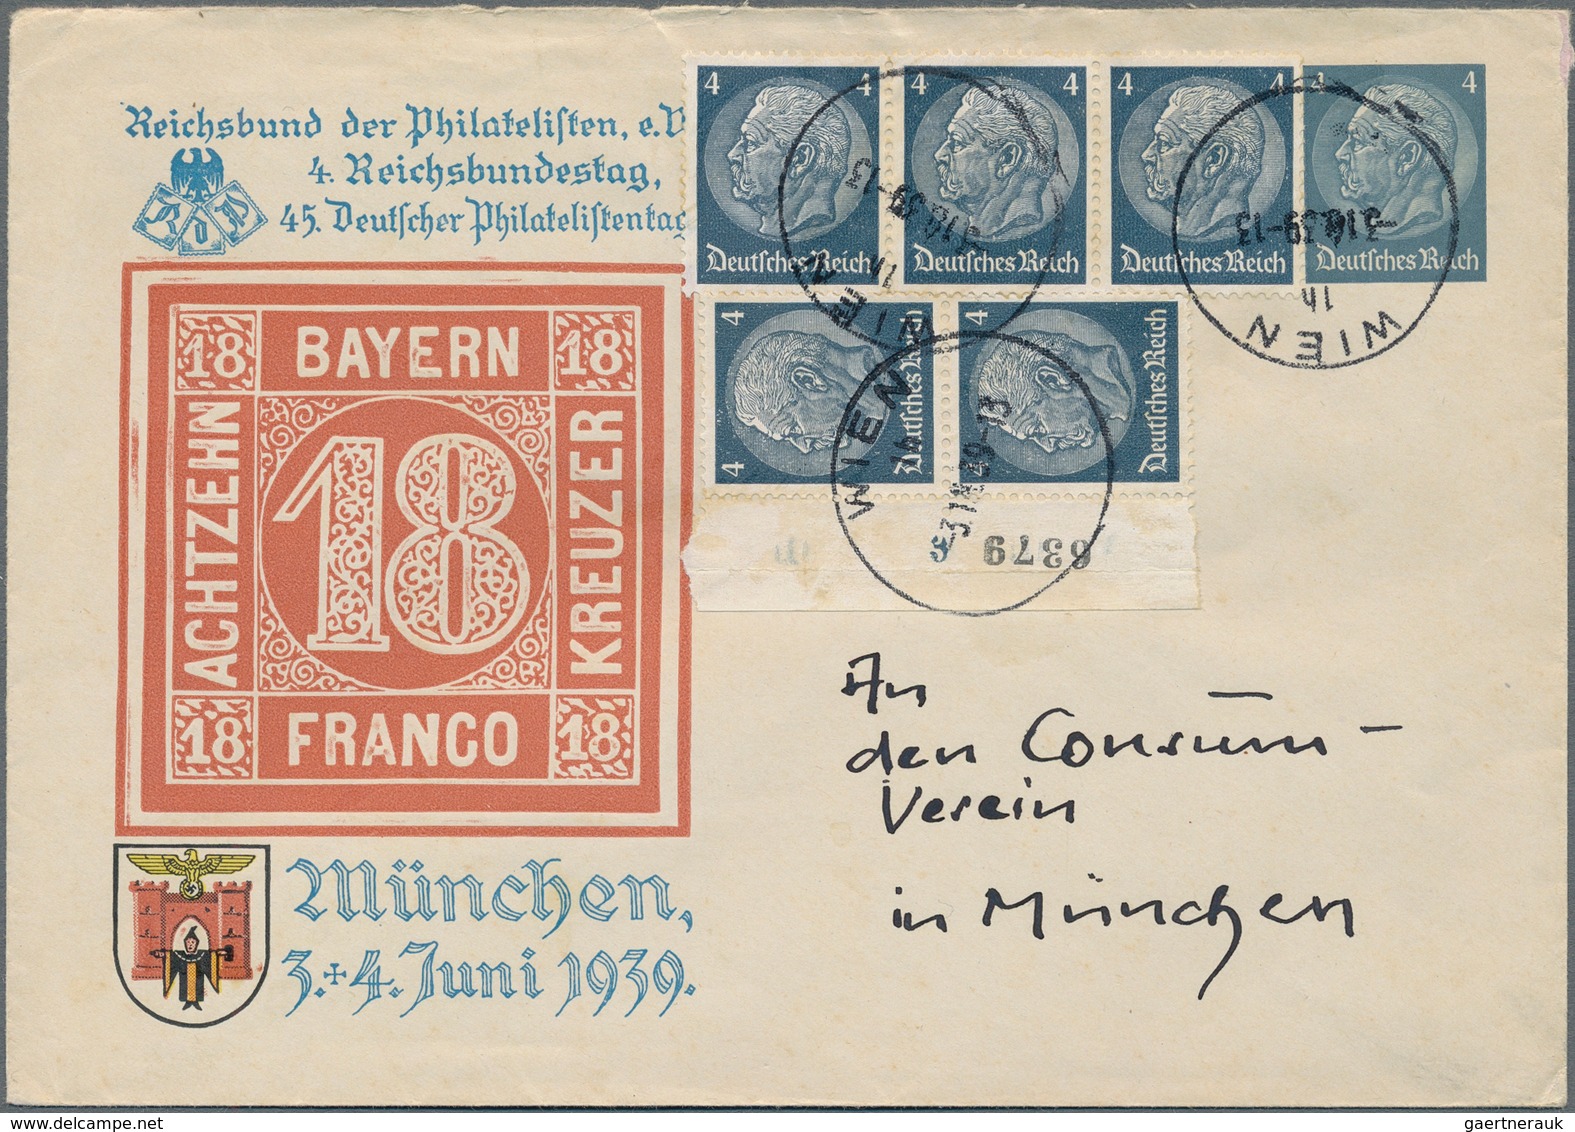 Deutsches Reich: 1872/1945, BELEGE-FUNDUS, gehaltvoller Posten mit ca.320 Belegen, dabei viele besse